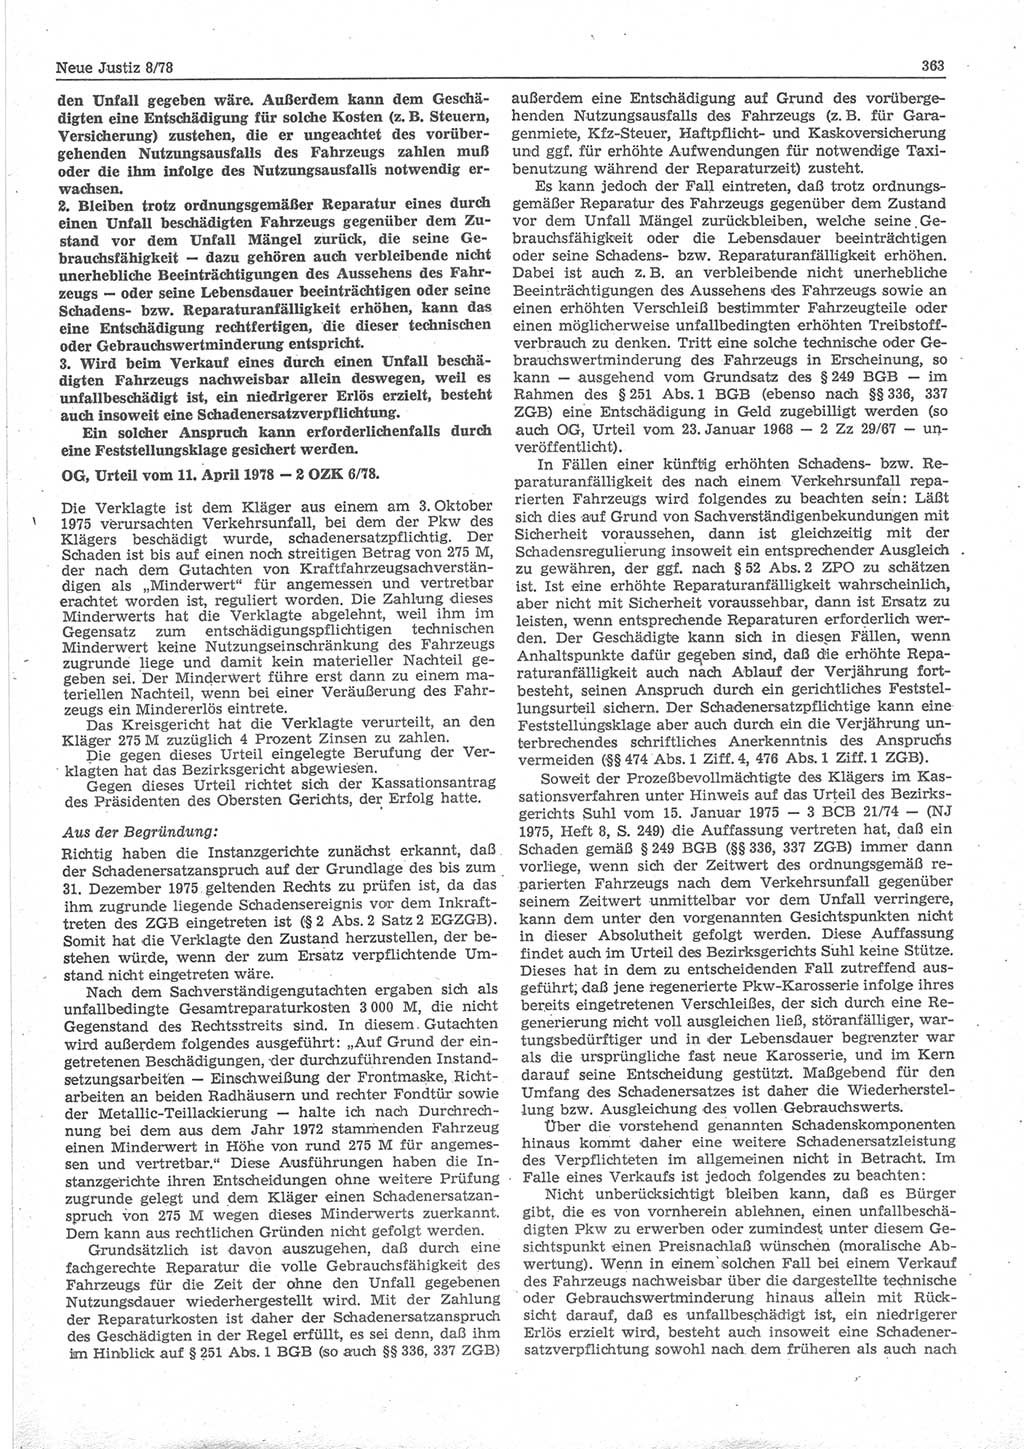 Neue Justiz (NJ), Zeitschrift für sozialistisches Recht und Gesetzlichkeit [Deutsche Demokratische Republik (DDR)], 32. Jahrgang 1978, Seite 363 (NJ DDR 1978, S. 363)